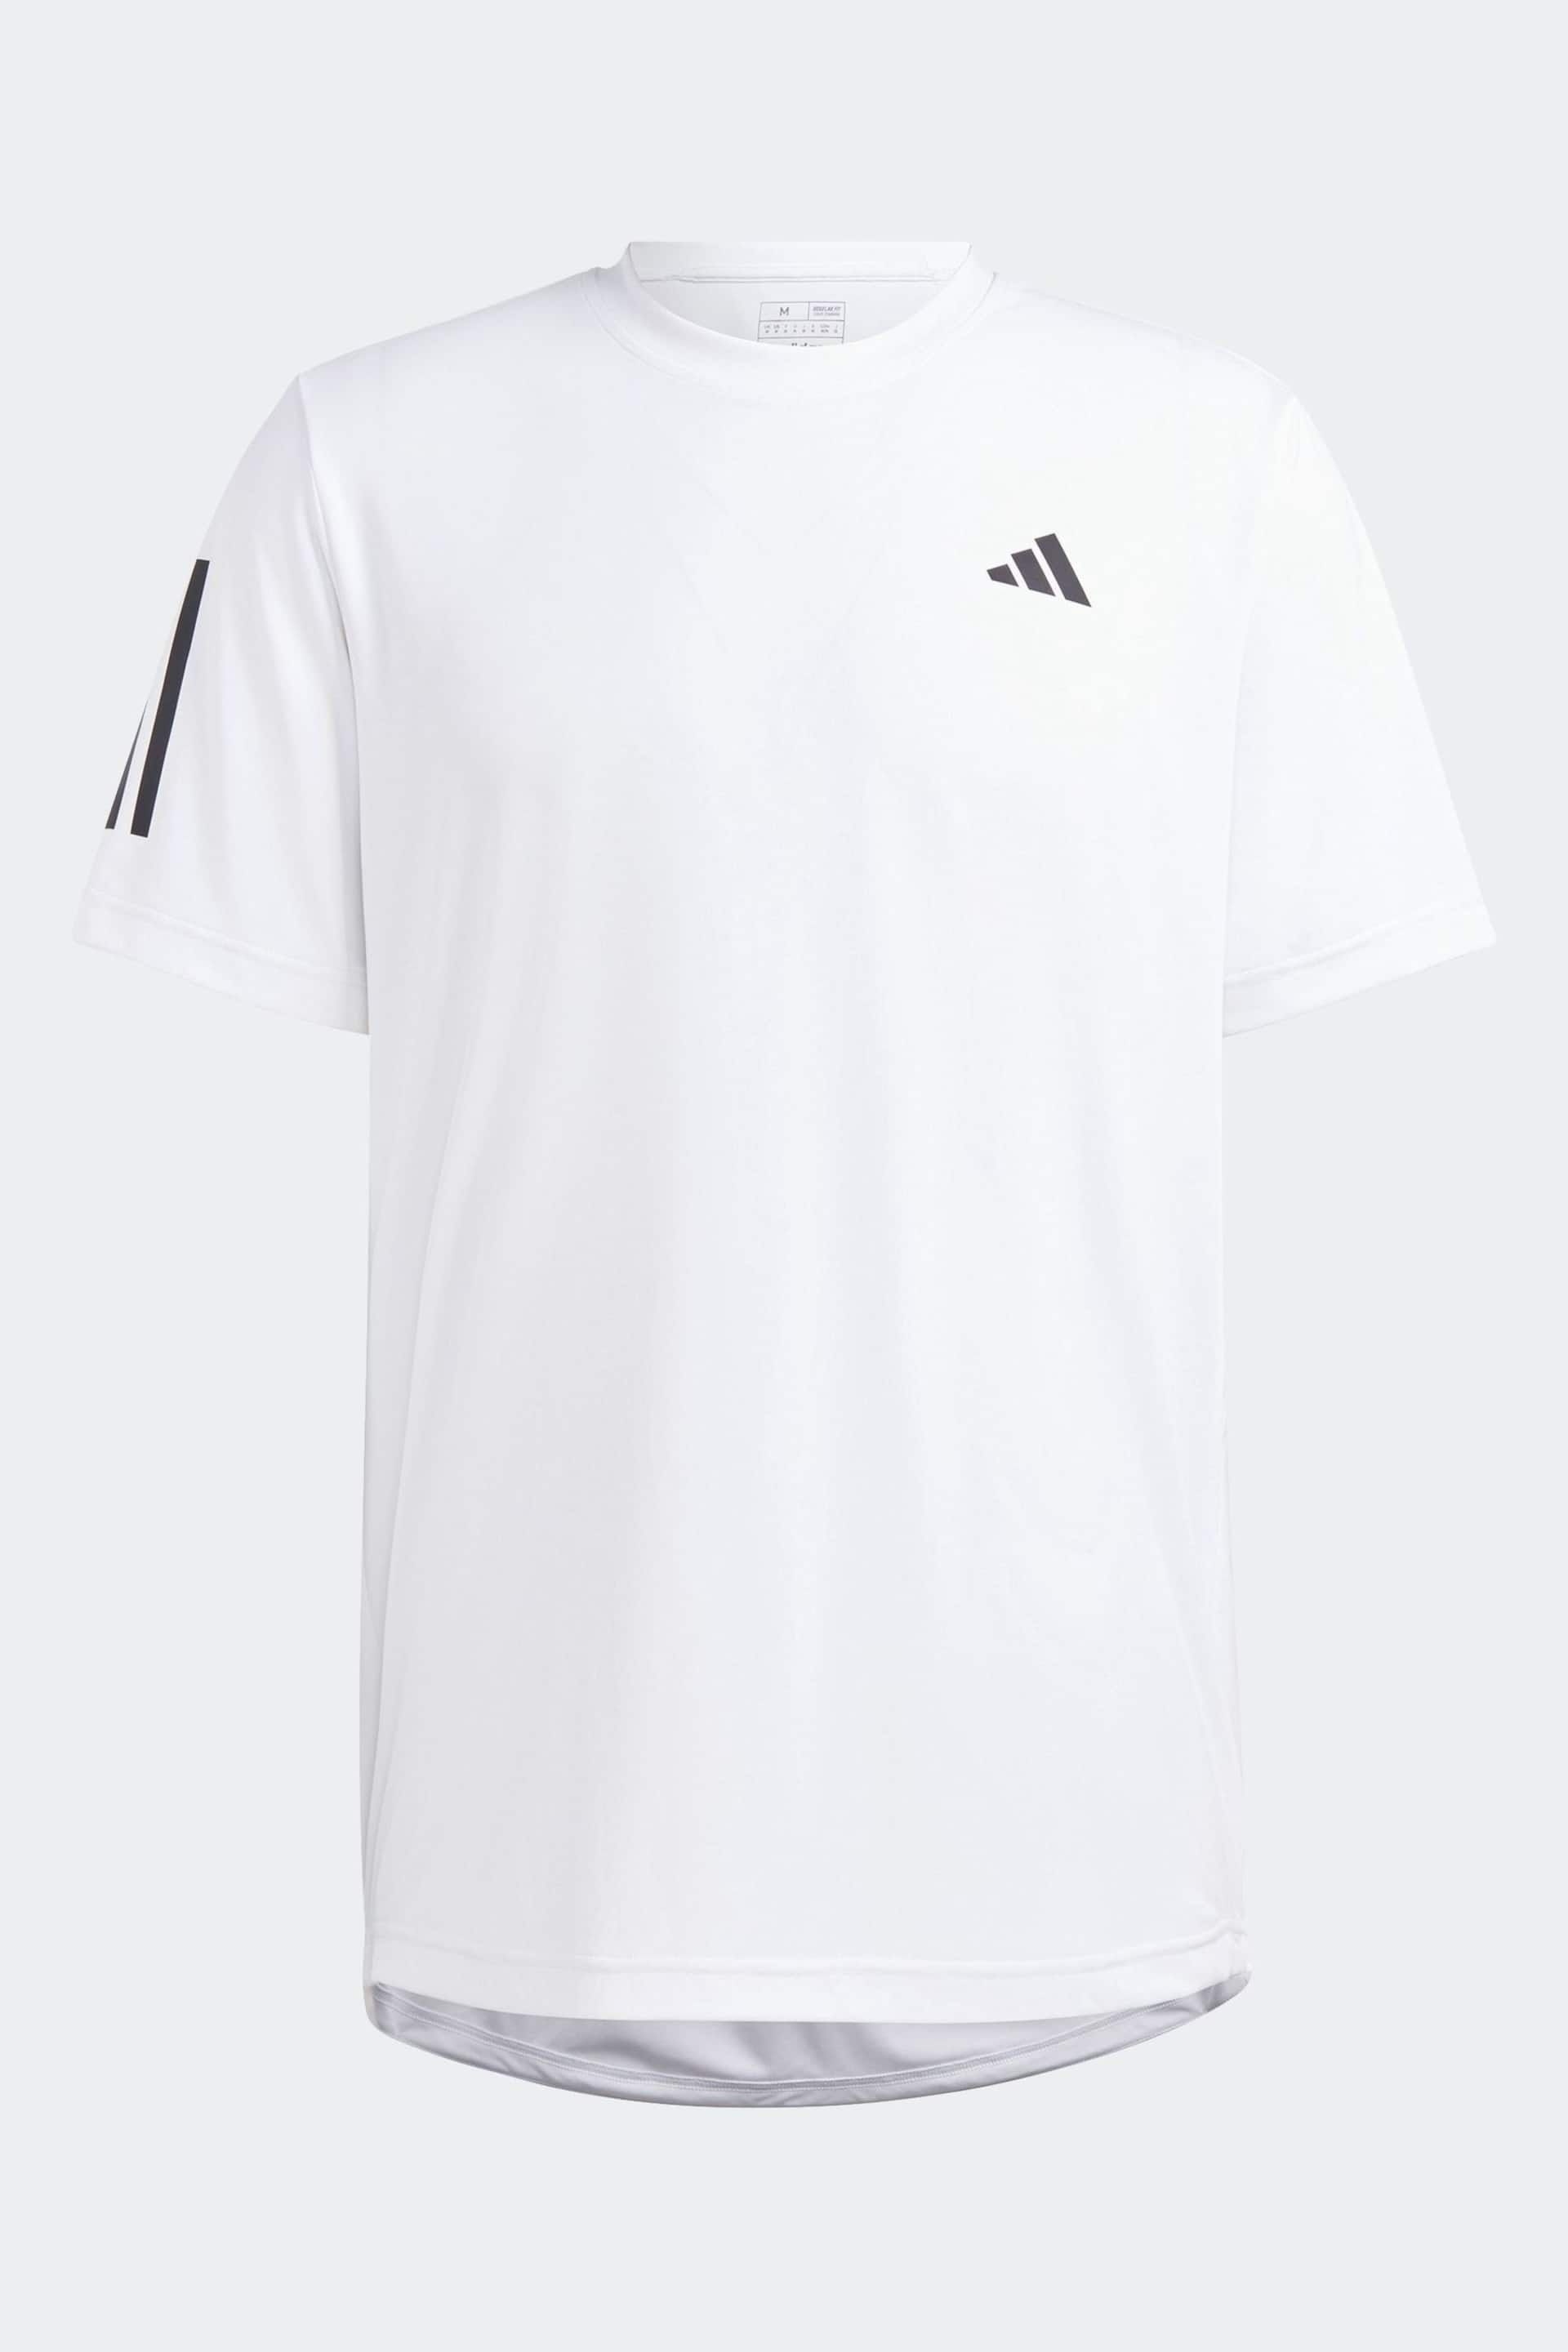 adidas White Club 3-Stripes Tennis T-Shirt - Image 6 of 6